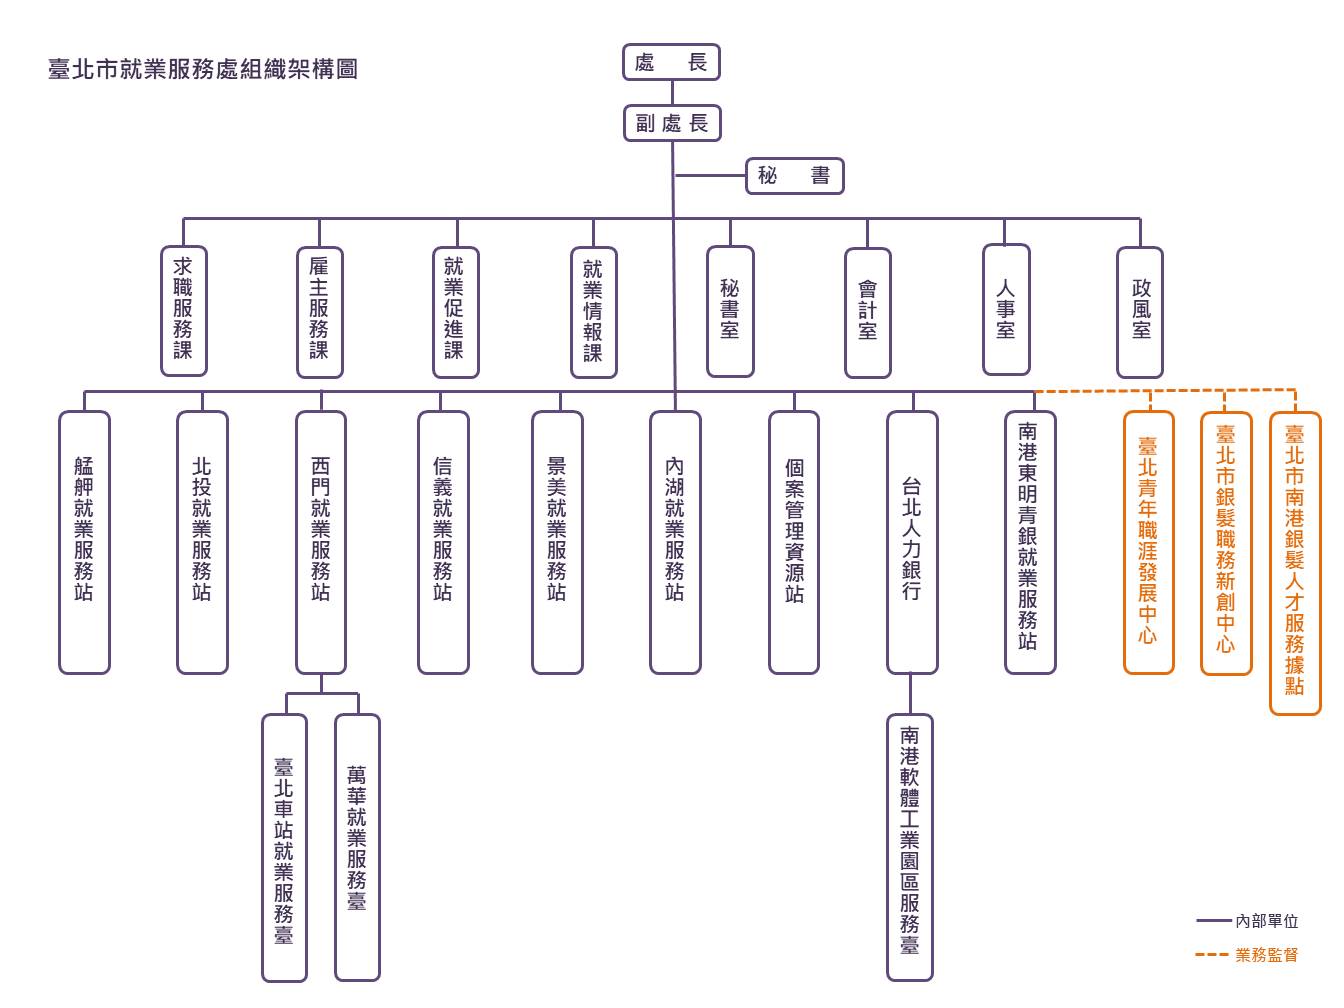 臺北市就業服務處組織架構圖